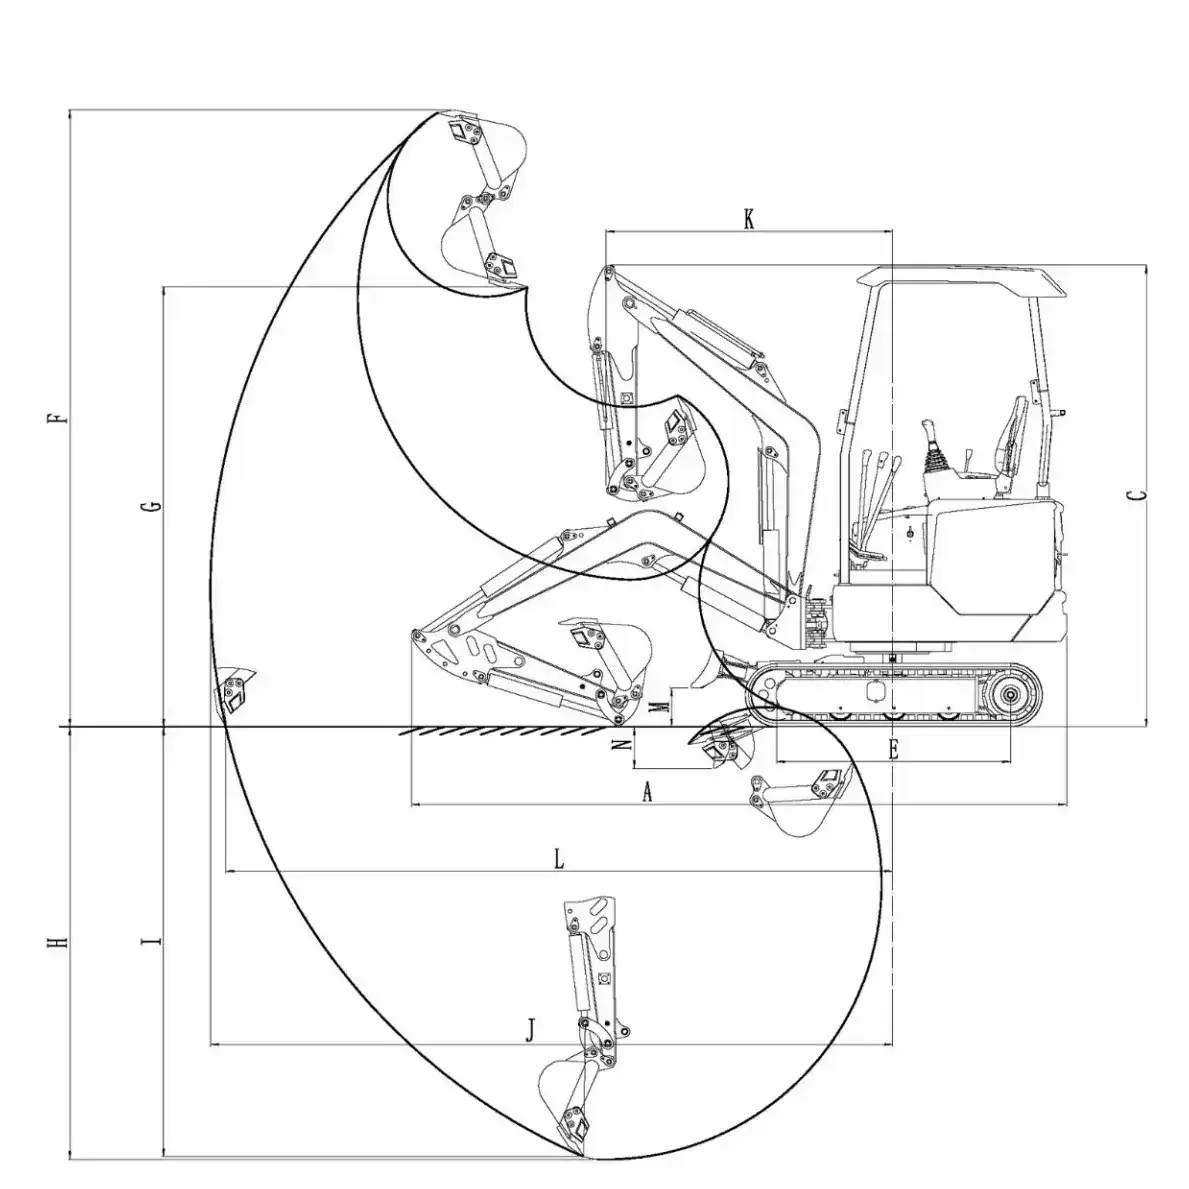 Technical diagram CL18S mini excavator